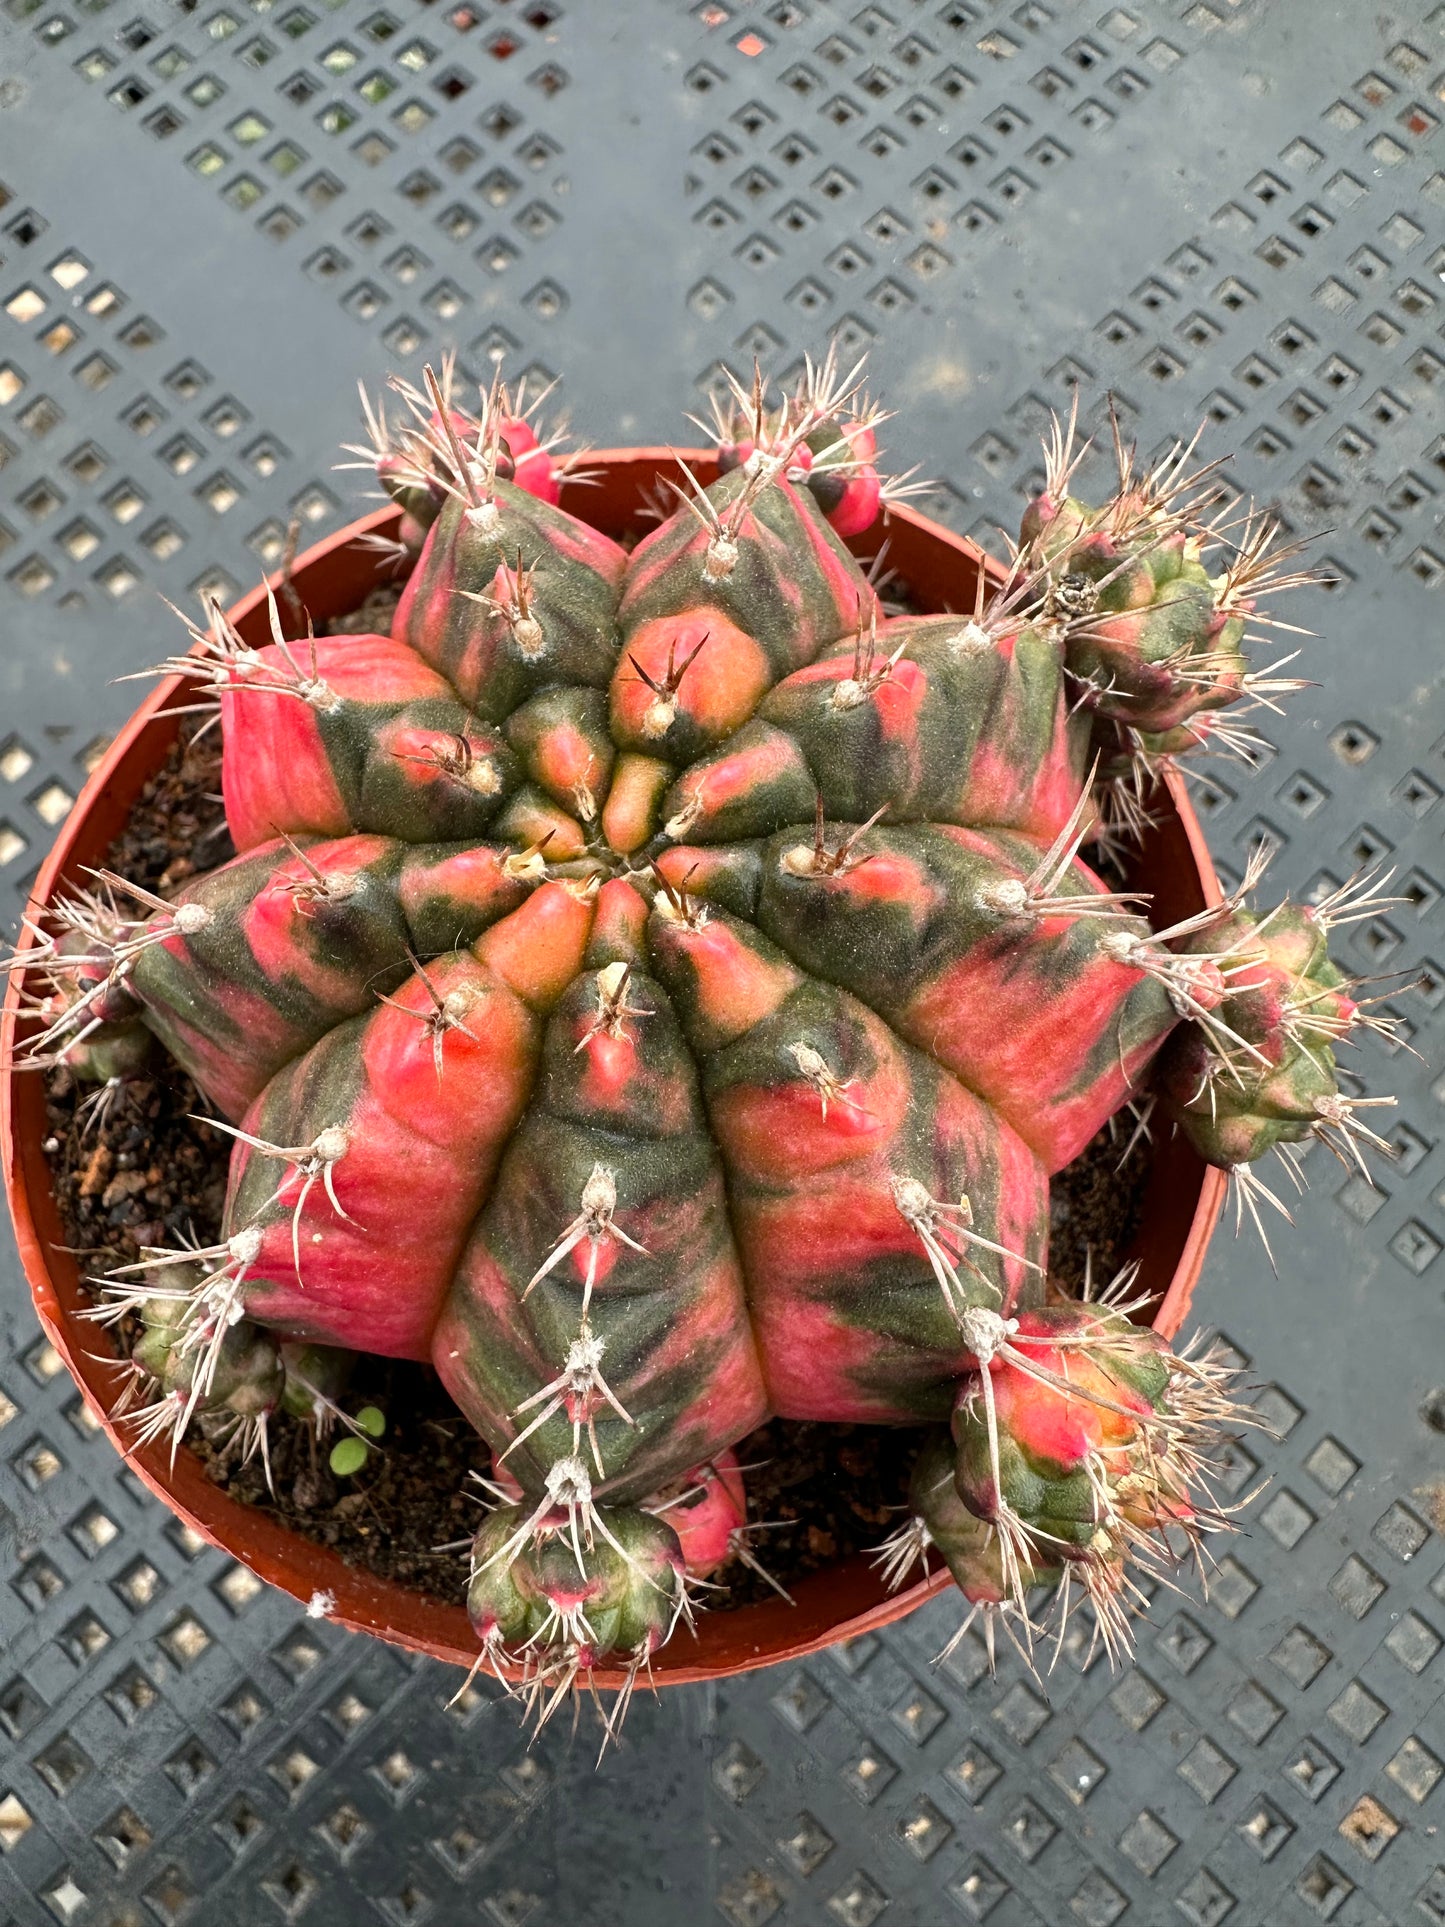 Gymnocalycium mihanovichii var. friedrichii Werderm.10cm/ Cactus Echinopsis tubiflora / Variegated Natural Live Plants Succulents